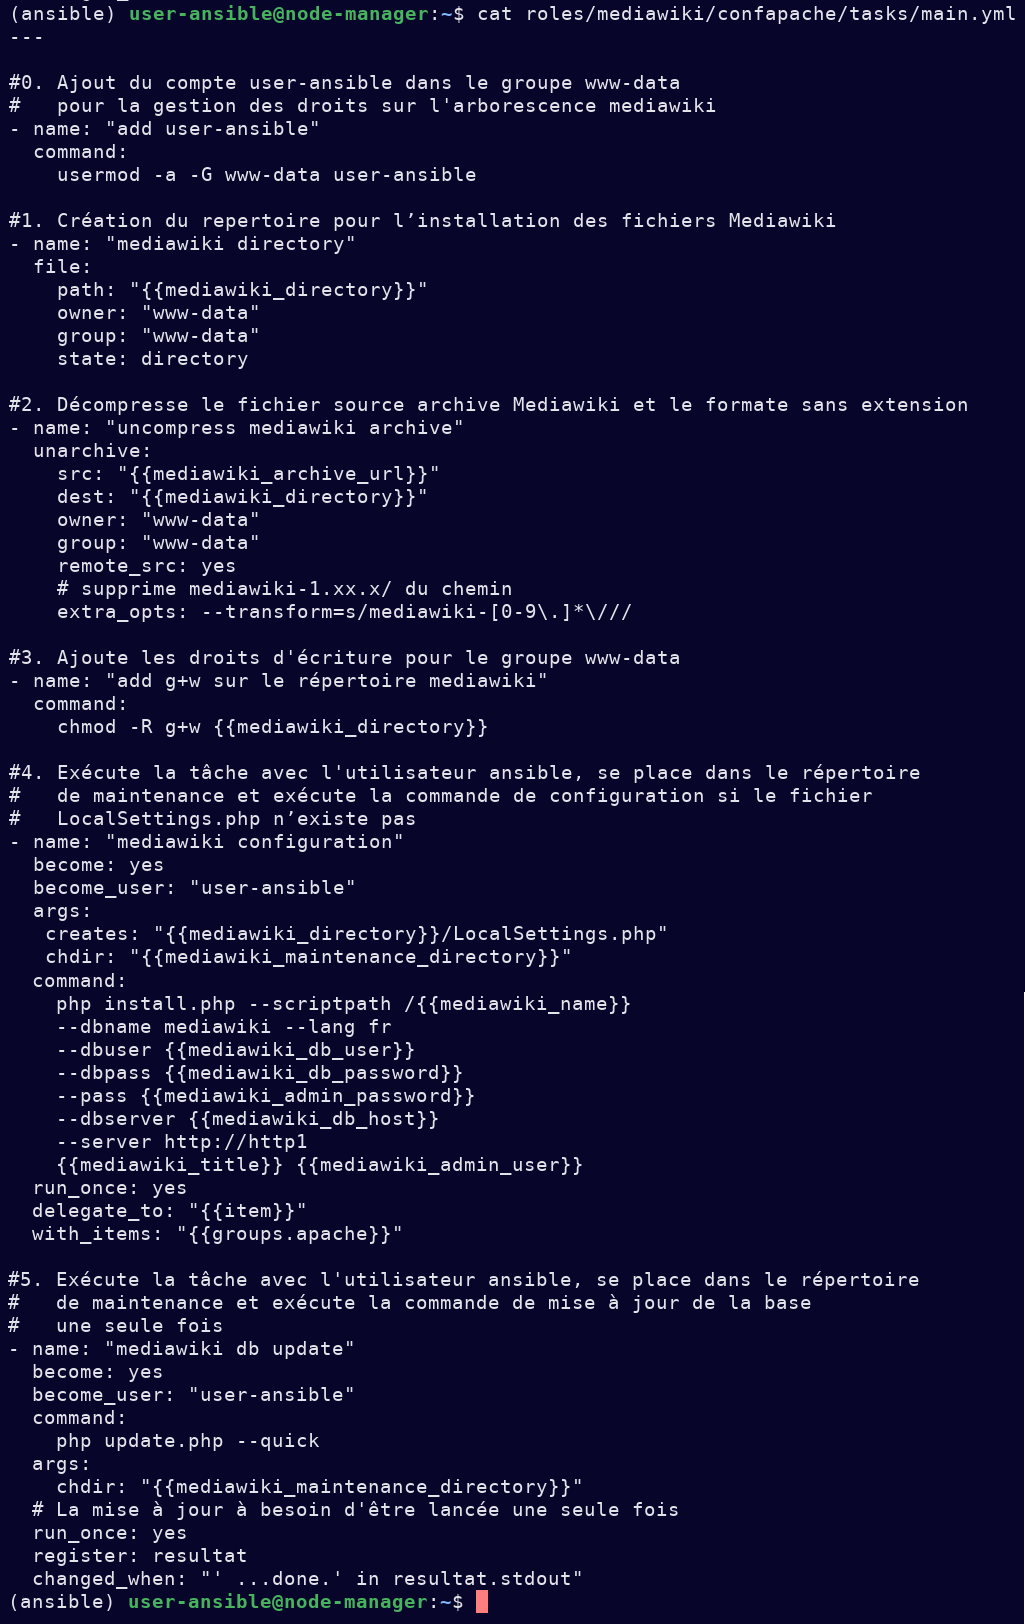 L'image montre une capture décrivant décrivant toutes les actions nécessaires pour configurer les fichiers MediaWiki dans Apache